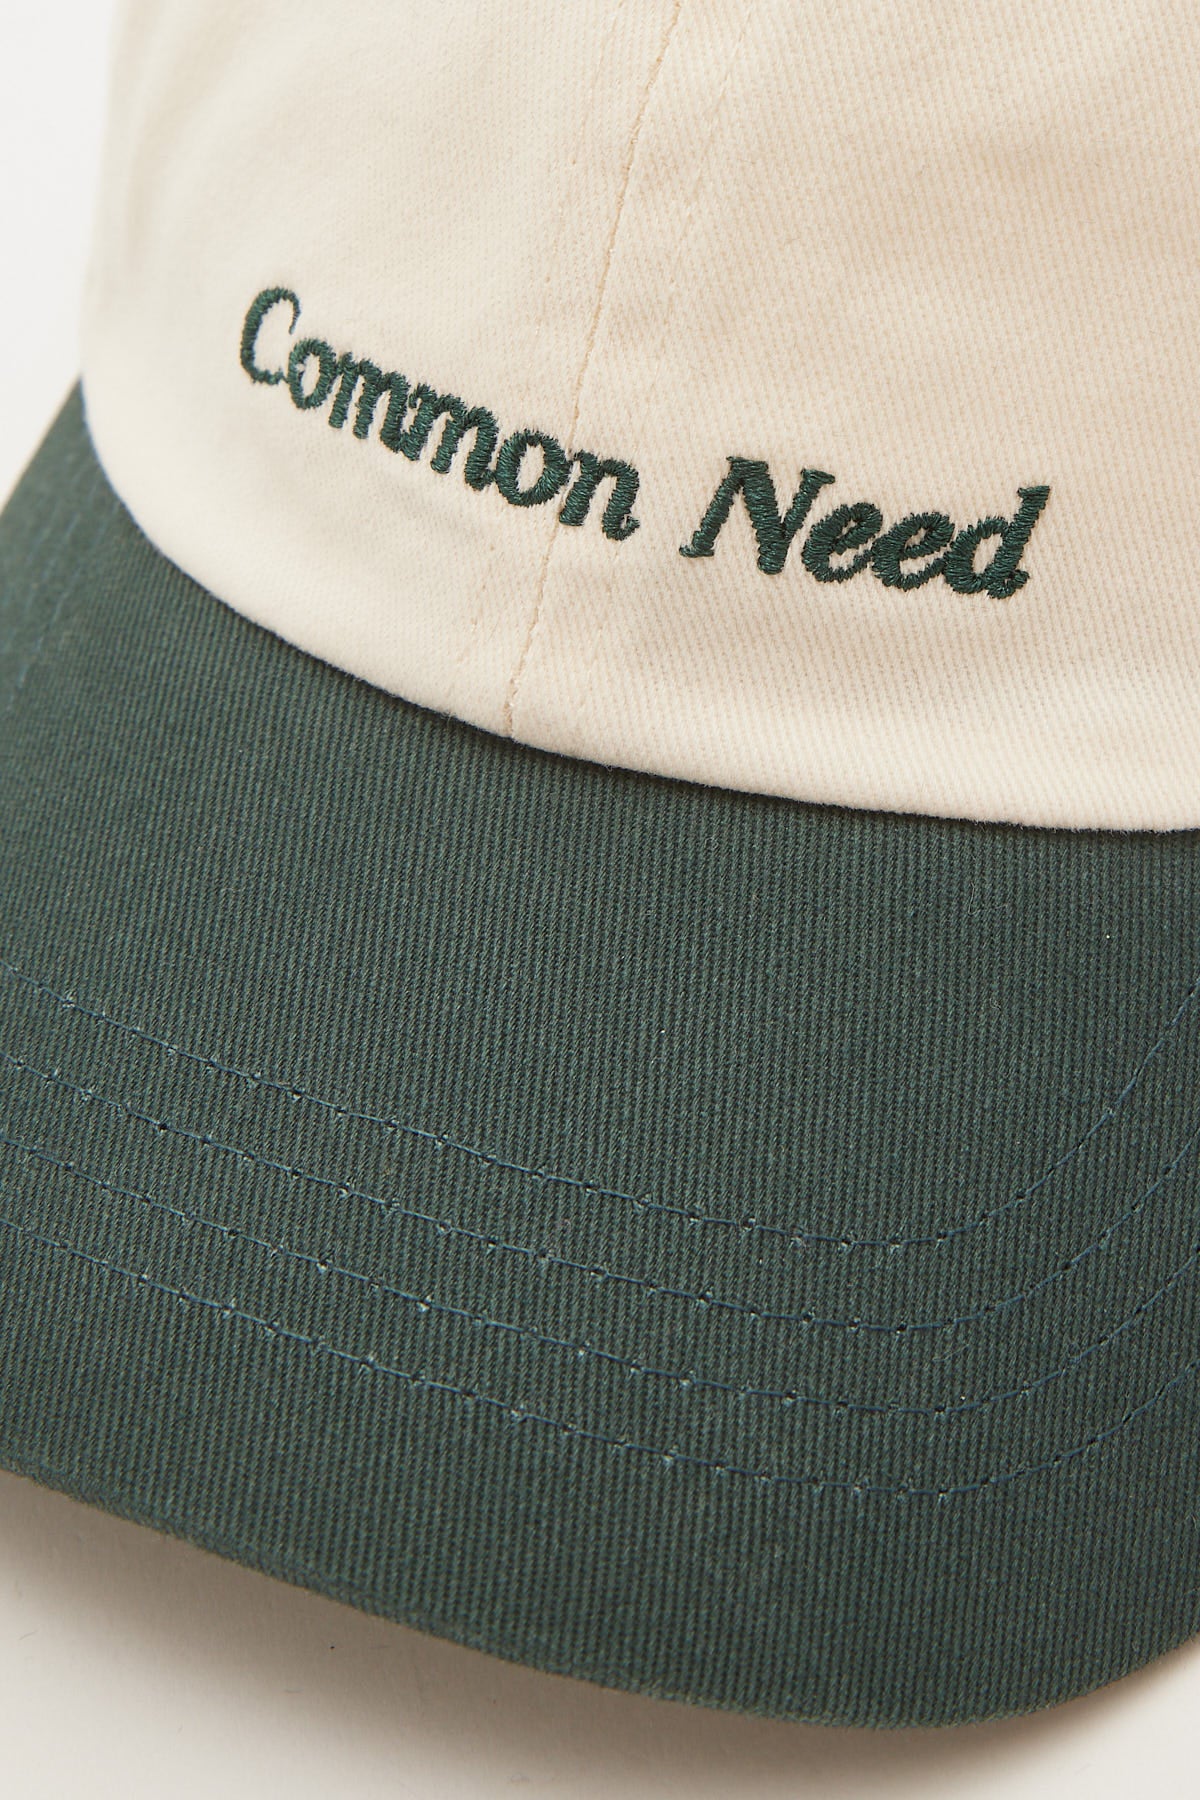 Common Need Accord Dad Cap Ecru/Green